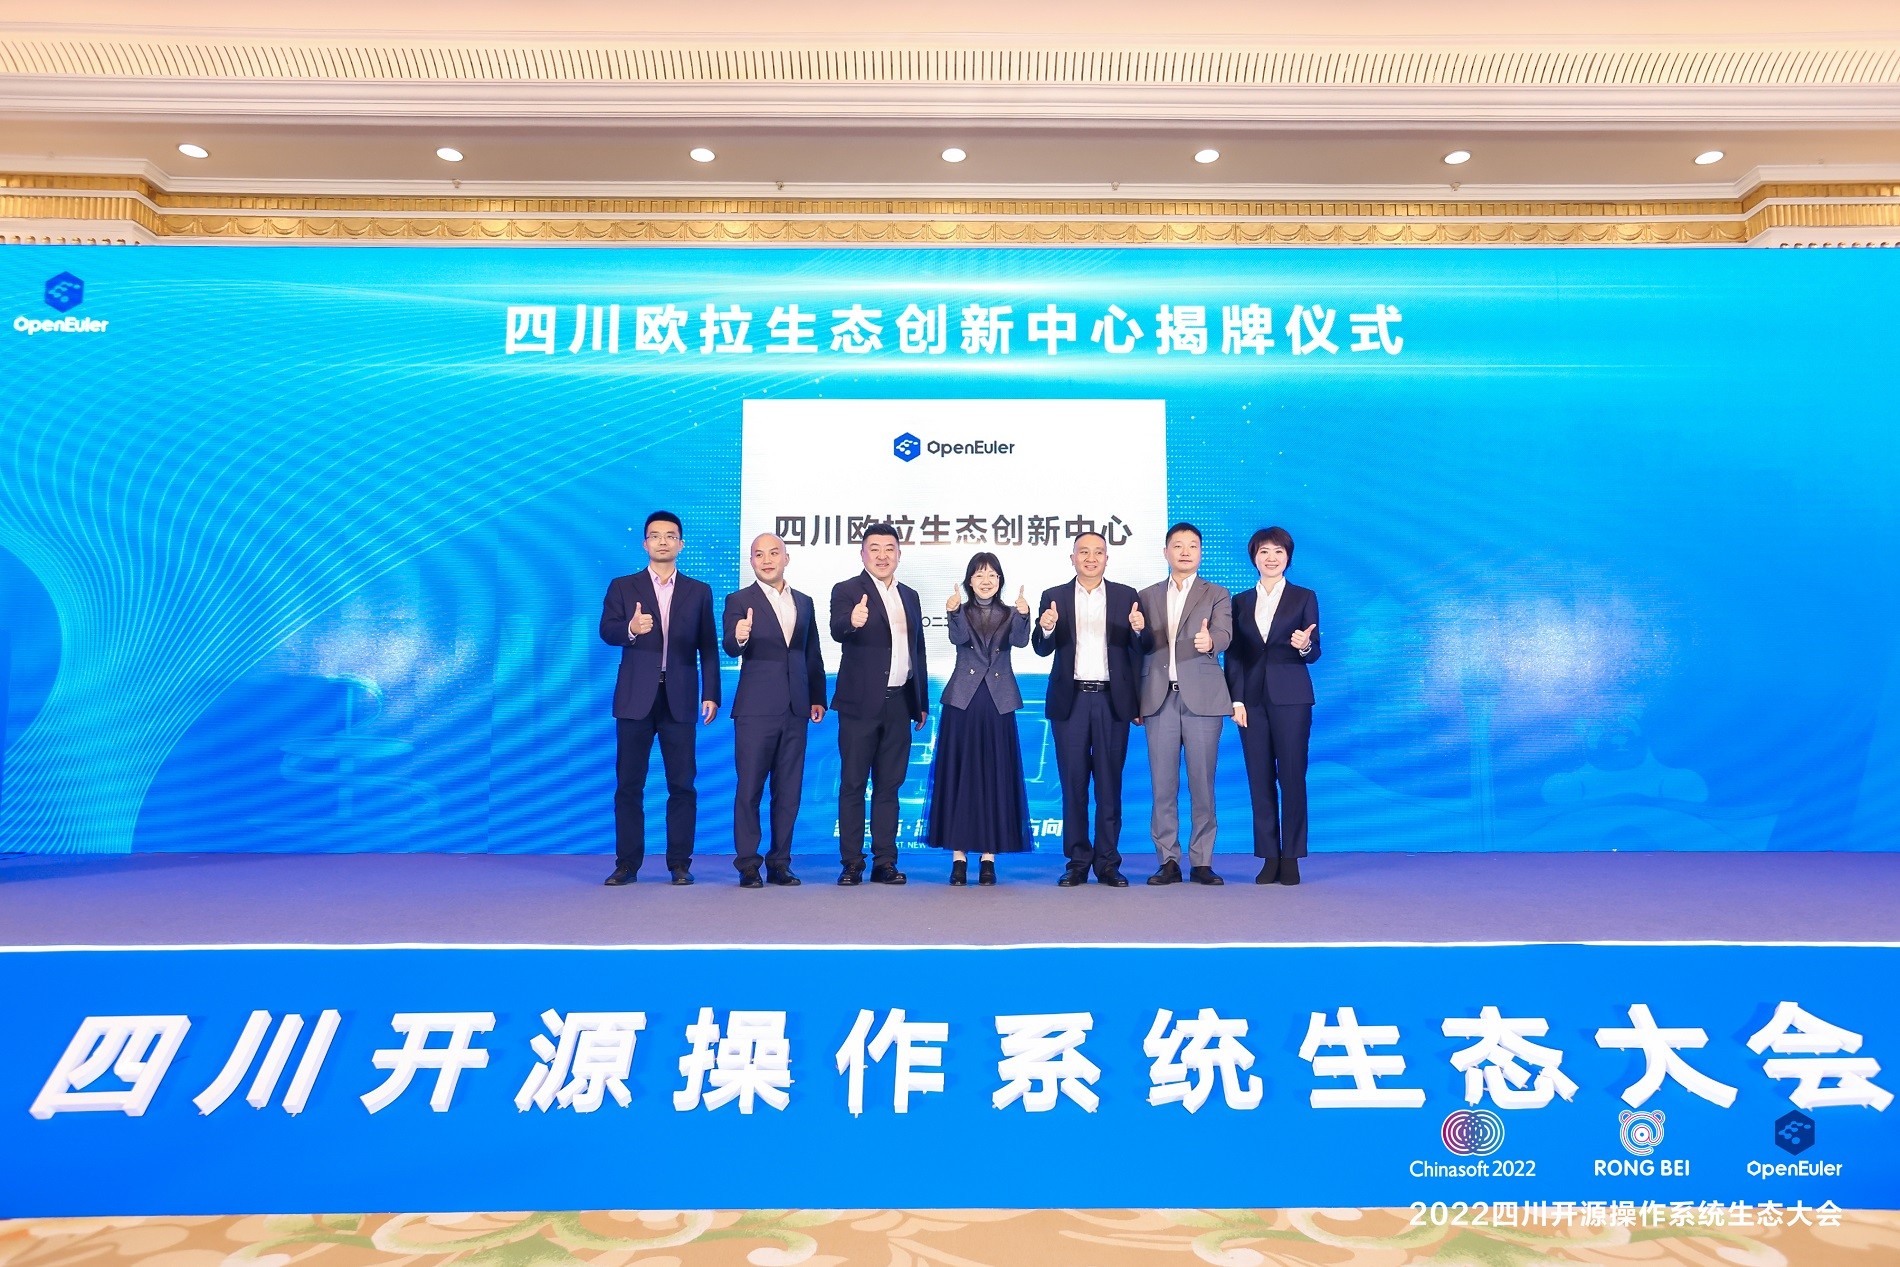 四川欧拉生态创新中心揭牌 打造四川计算产业全新生态